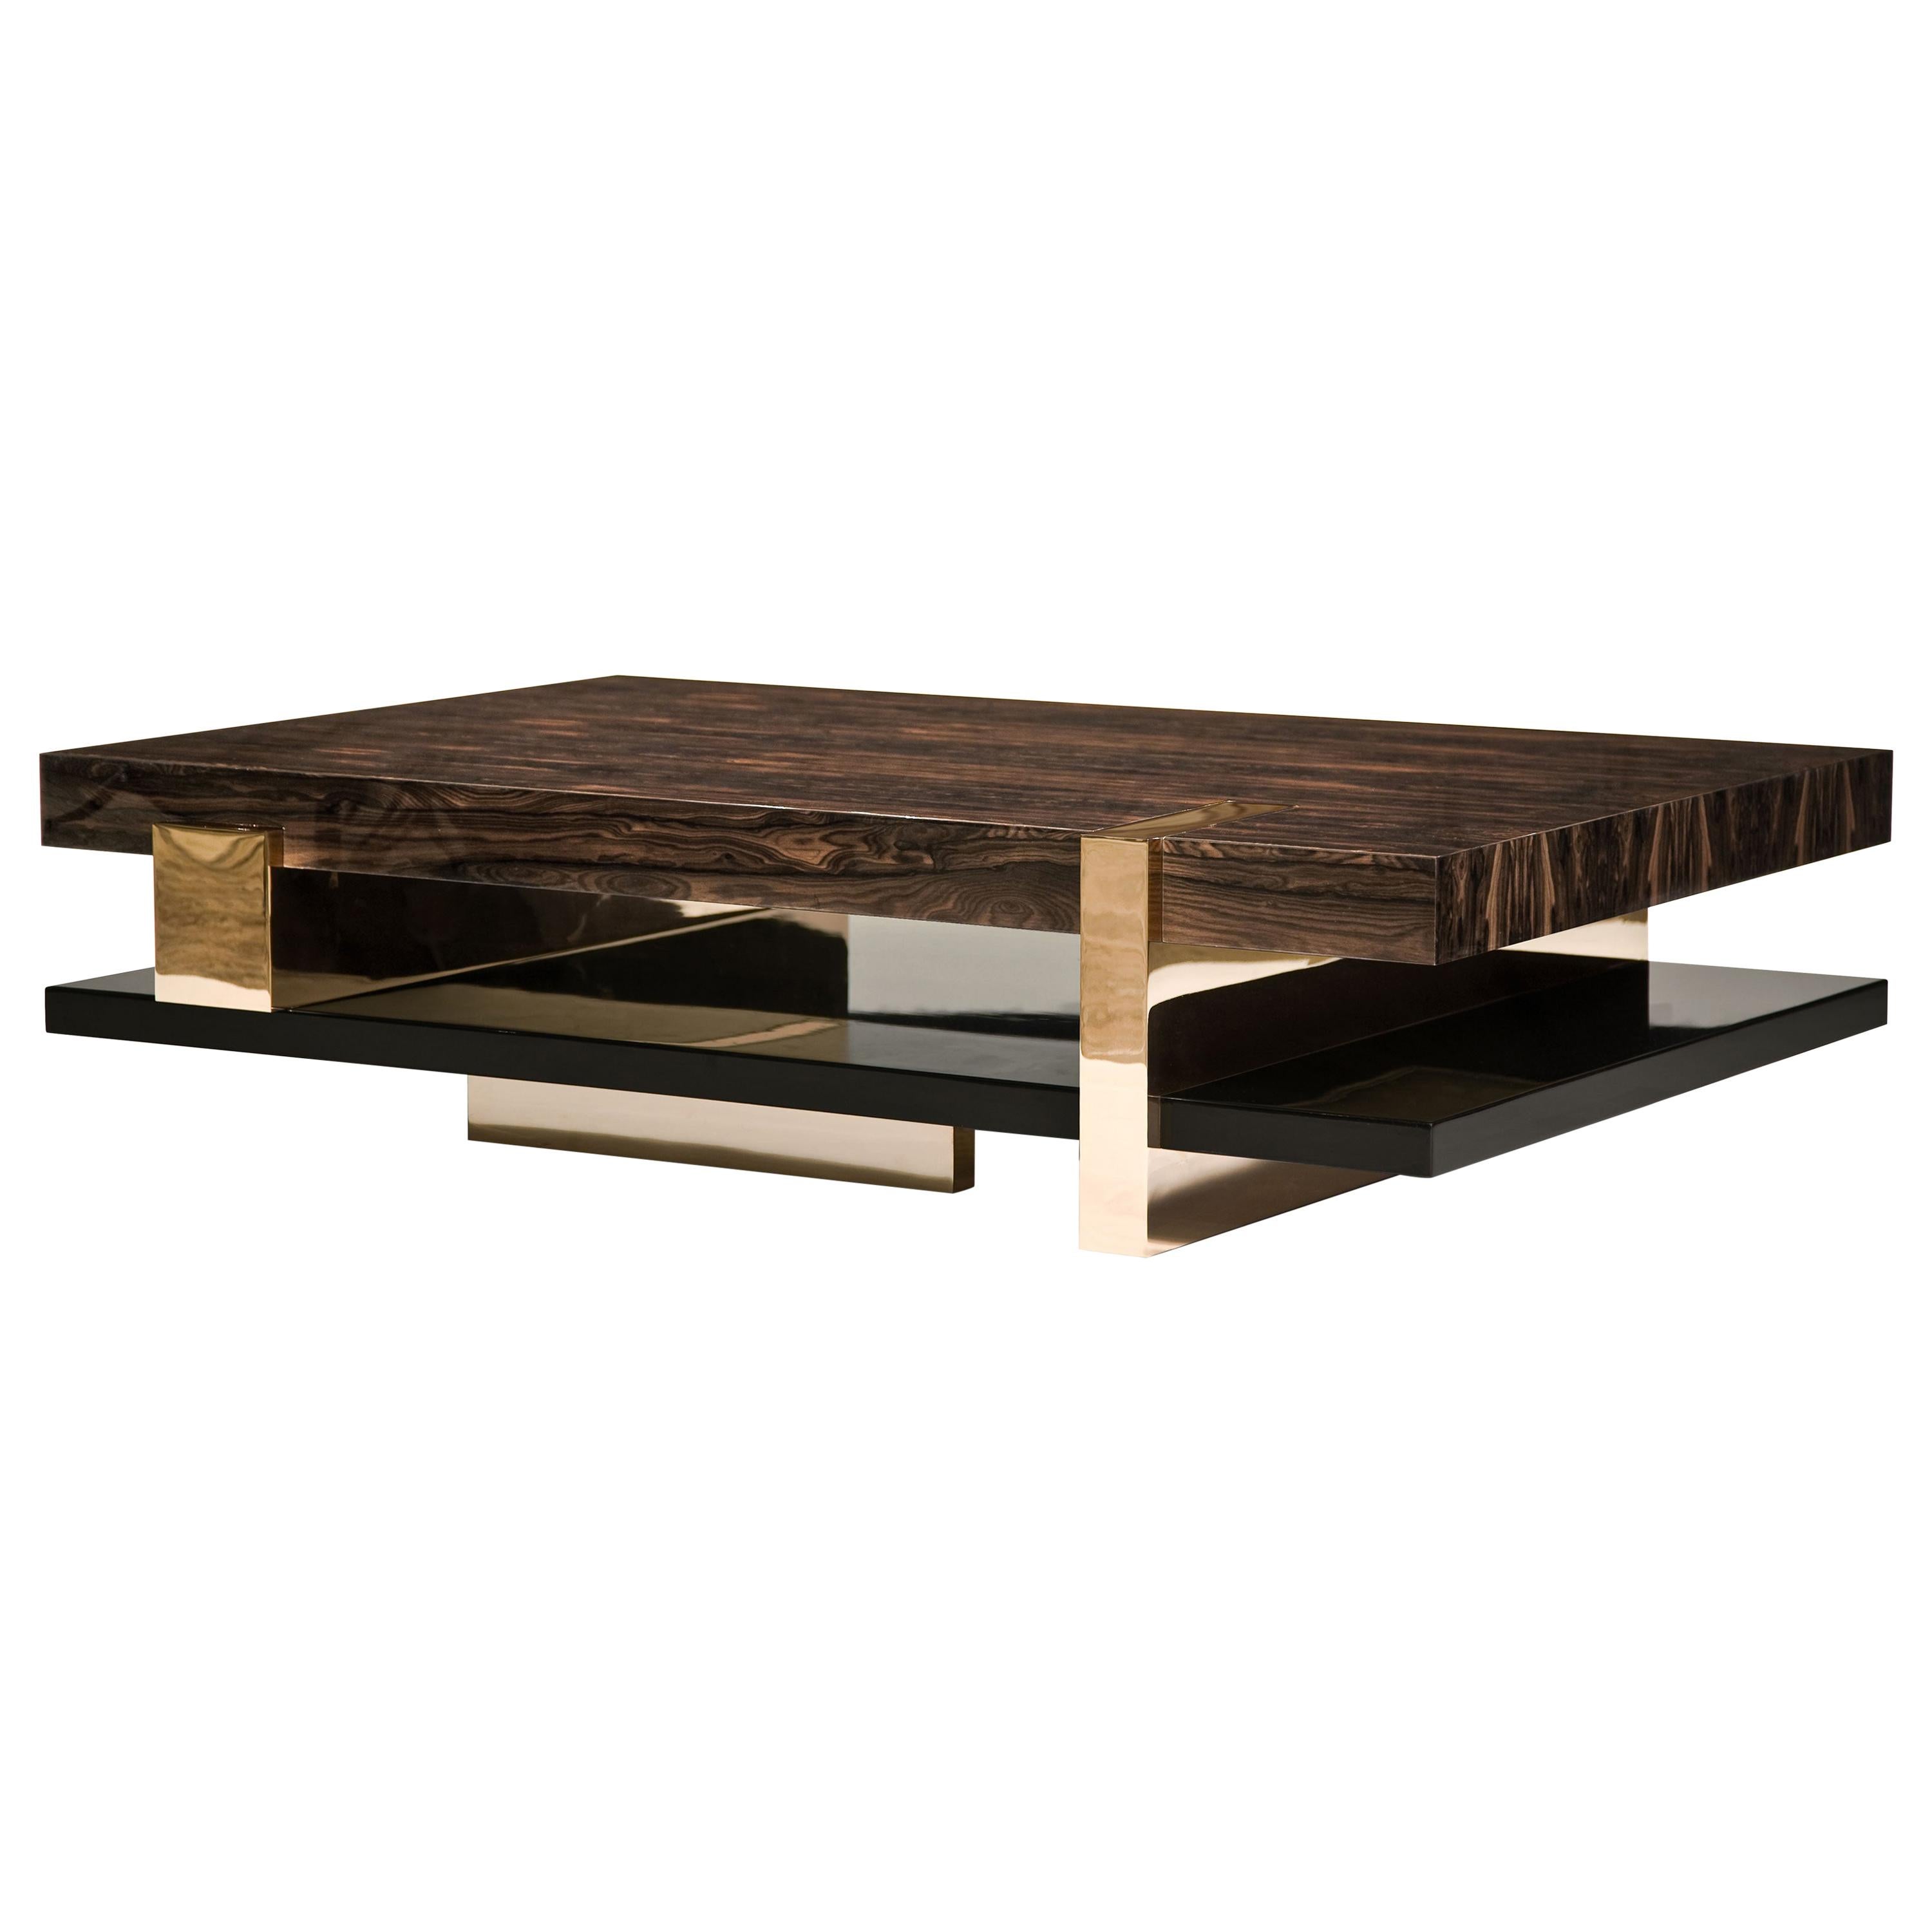 Table basse Pierre :  Table sur mesure en acier inoxydable, bronze et bois